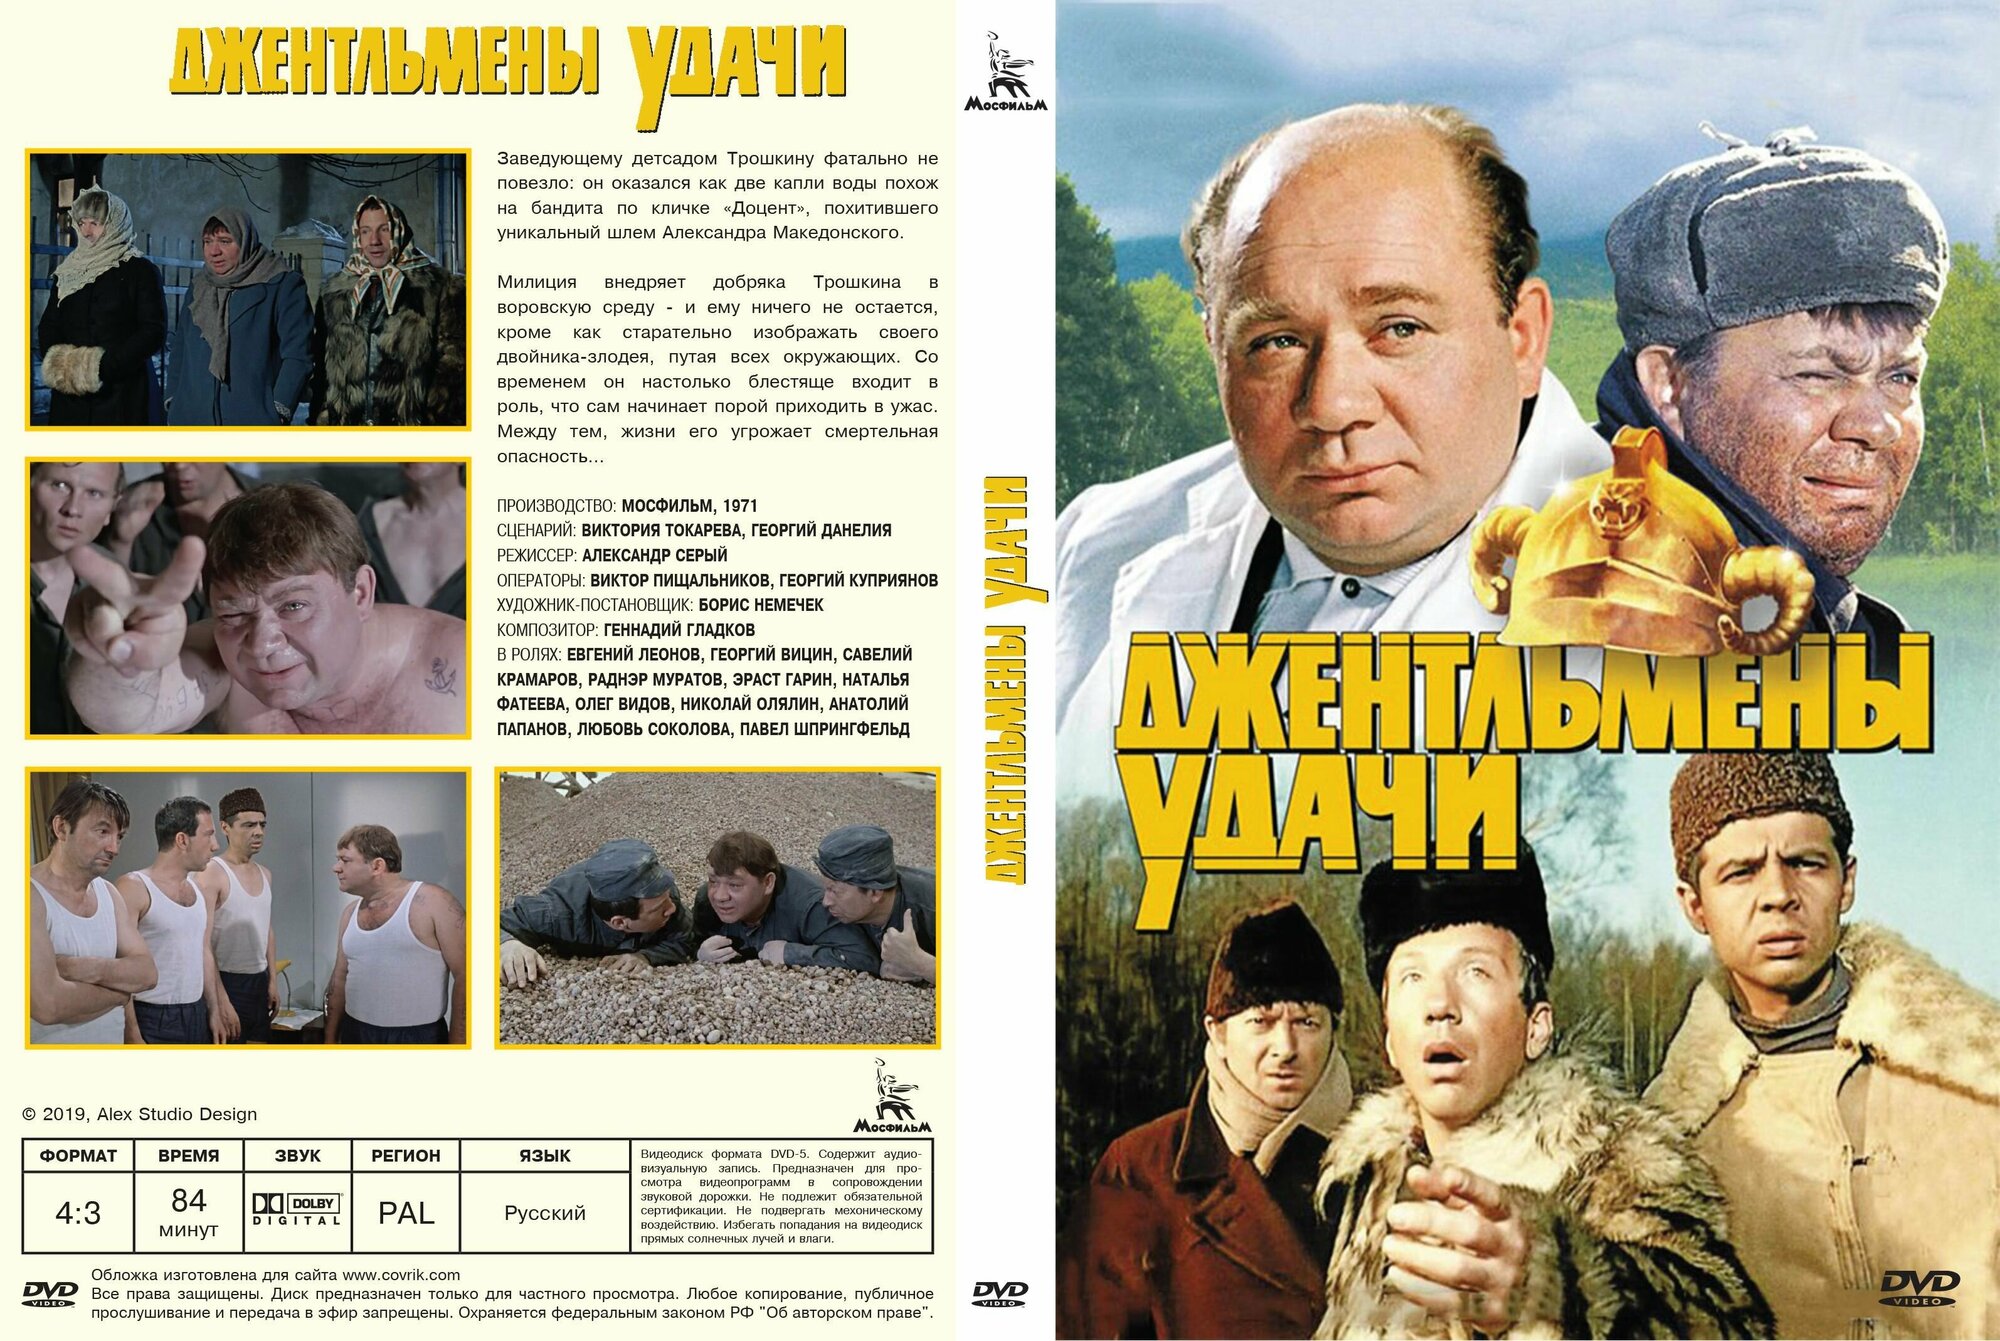 Советский фильм "Джентльмены удачи" 1971г. (DVD)